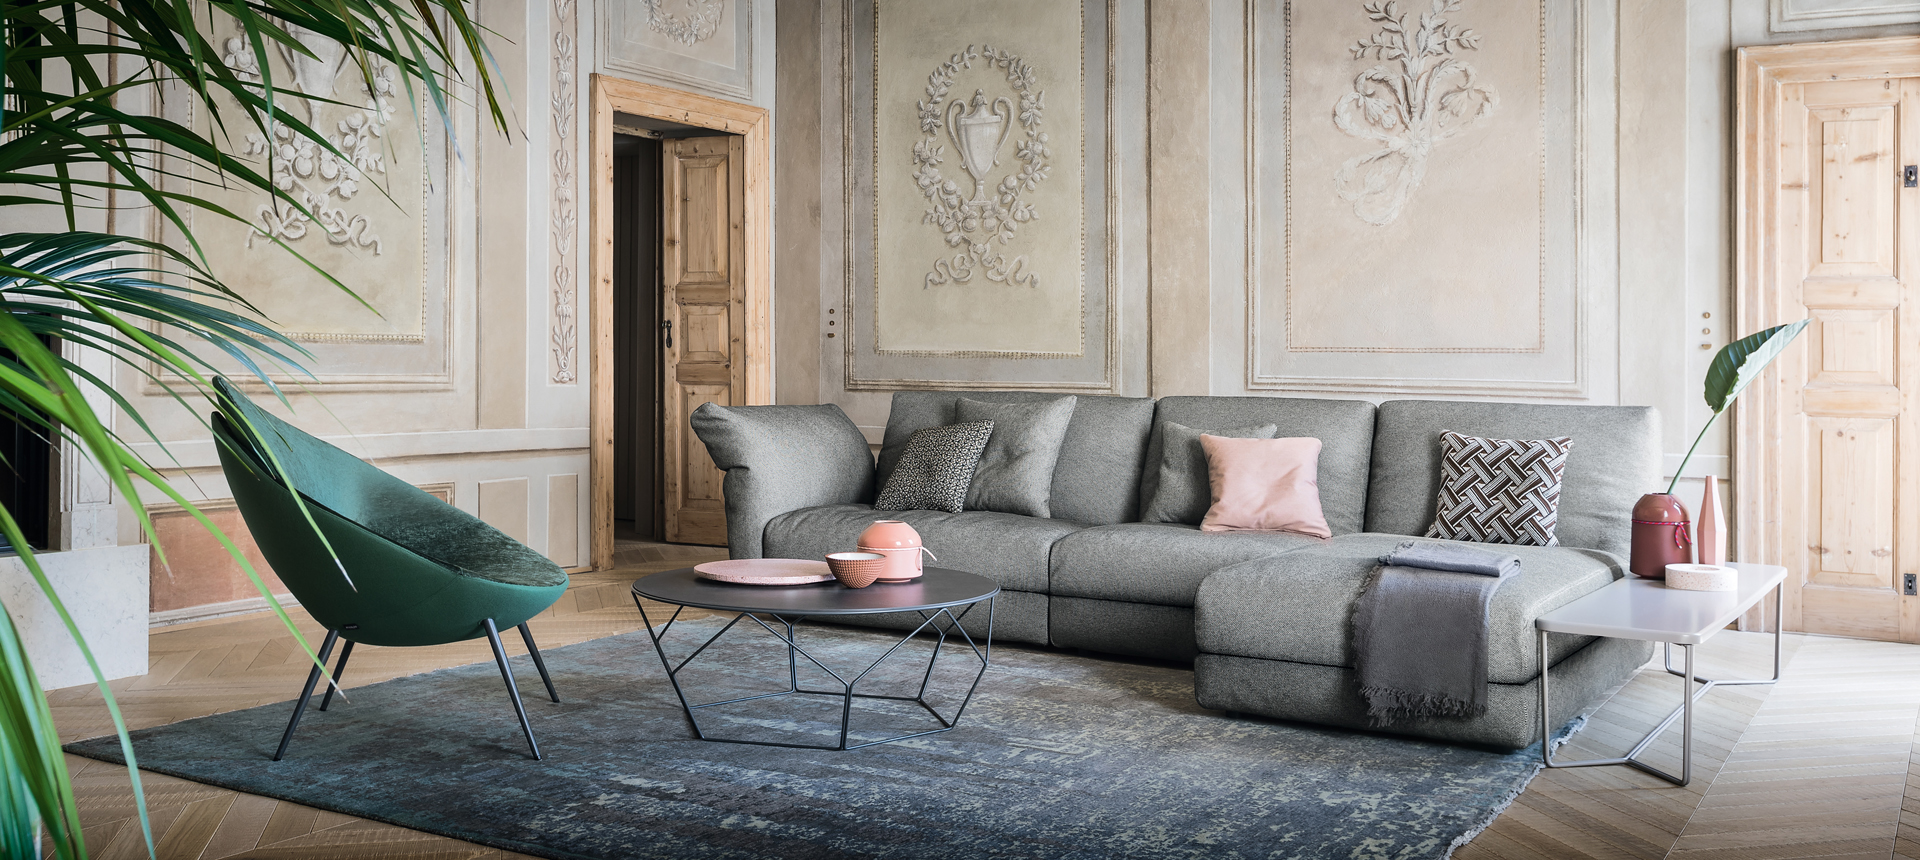 designer living room furniture austin